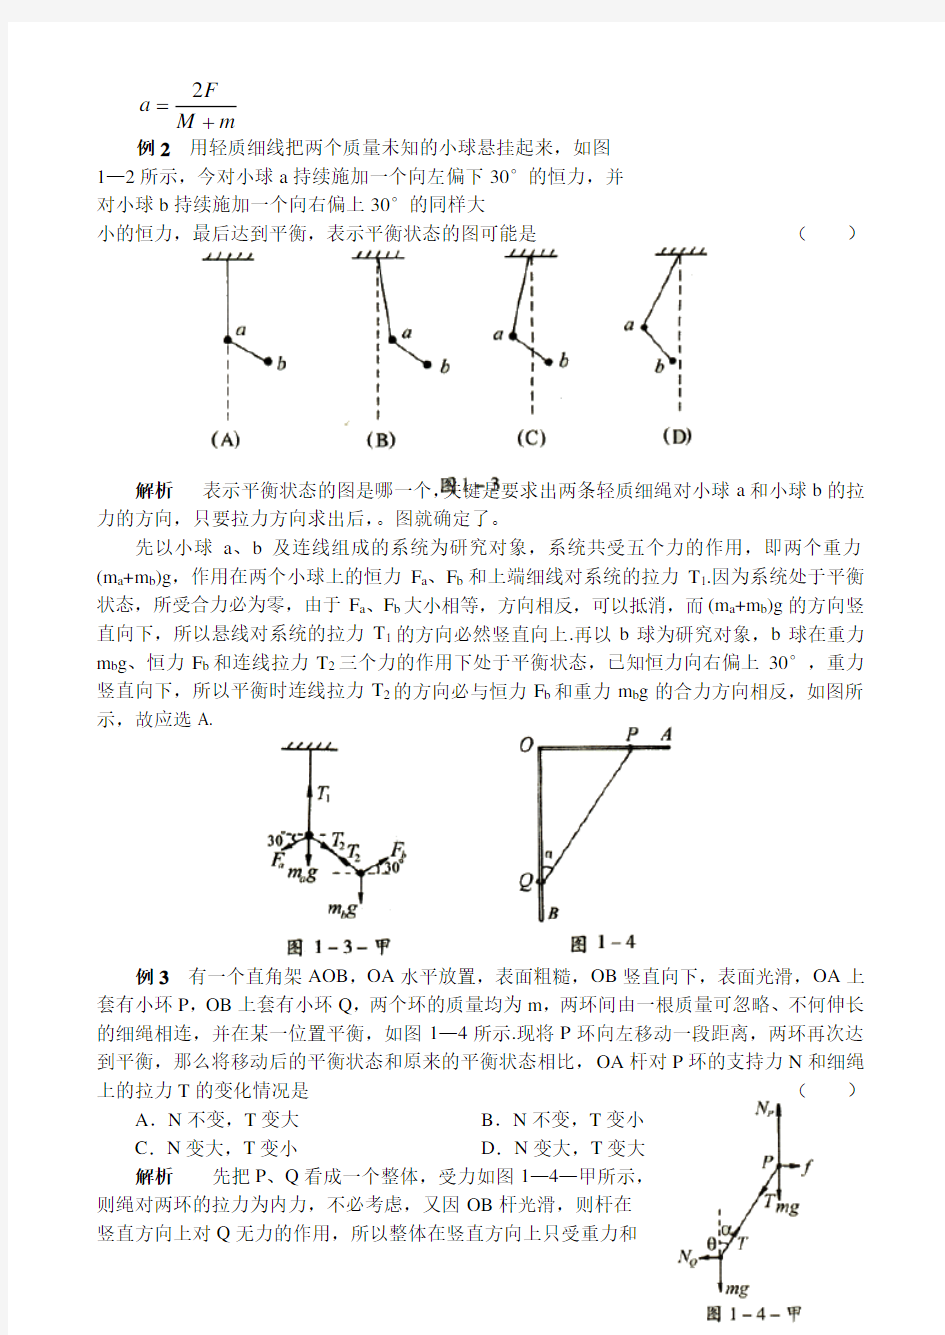 超级资源：高中物理奥赛解题方法大全(14种另类解法)(110页)